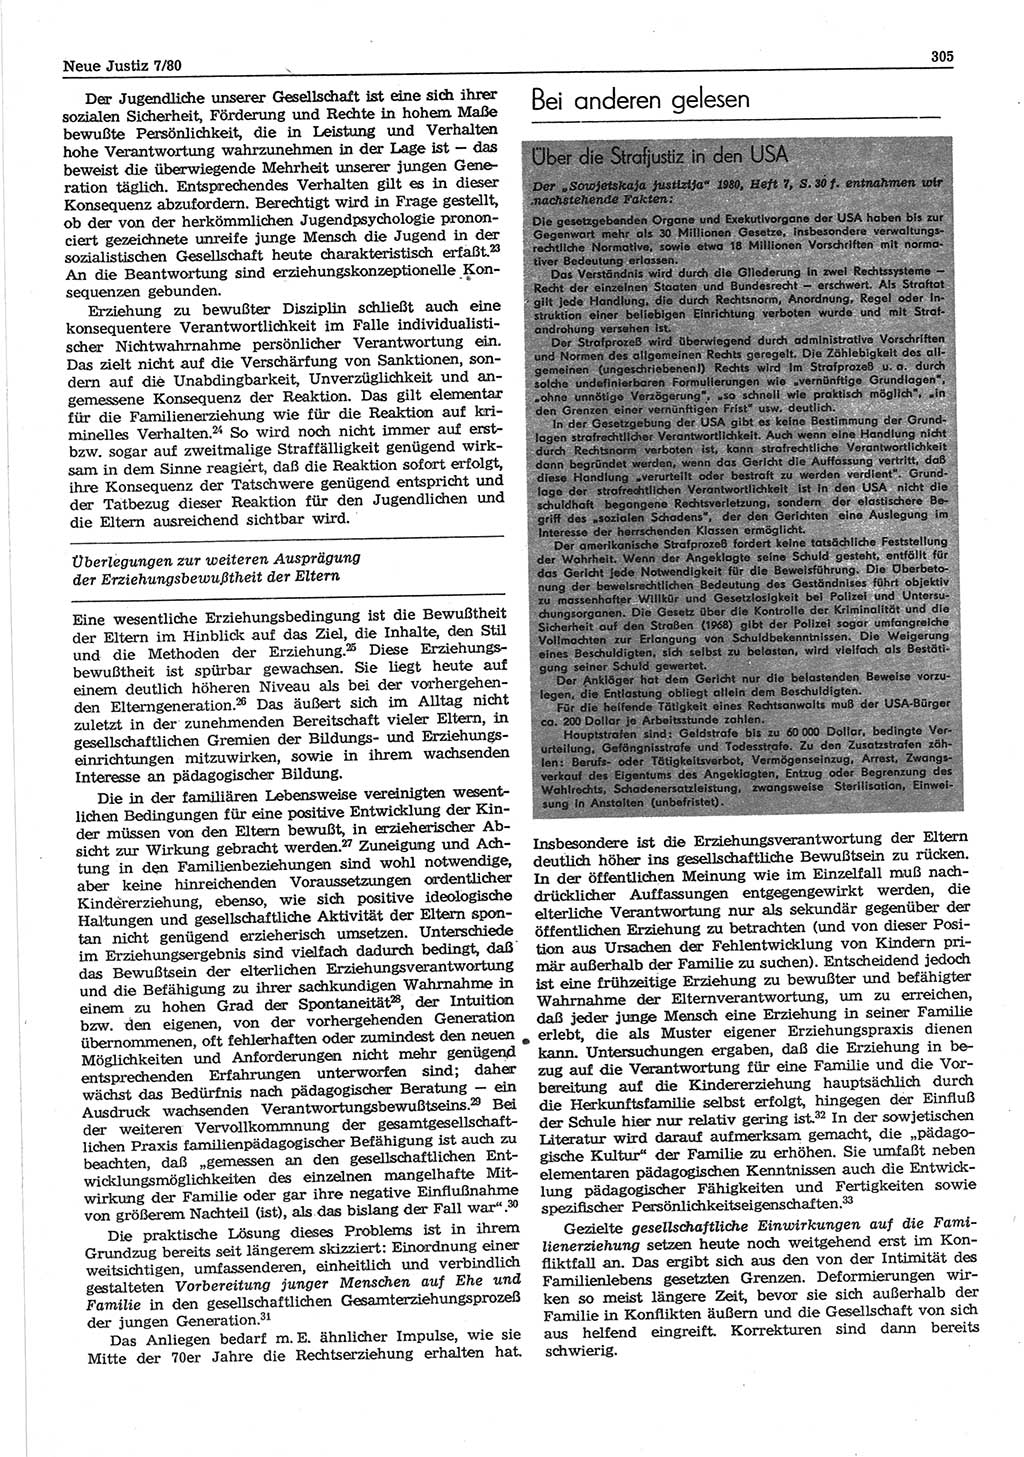 Neue Justiz (NJ), Zeitschrift für sozialistisches Recht und Gesetzlichkeit [Deutsche Demokratische Republik (DDR)], 34. Jahrgang 1980, Seite 305 (NJ DDR 1980, S. 305)